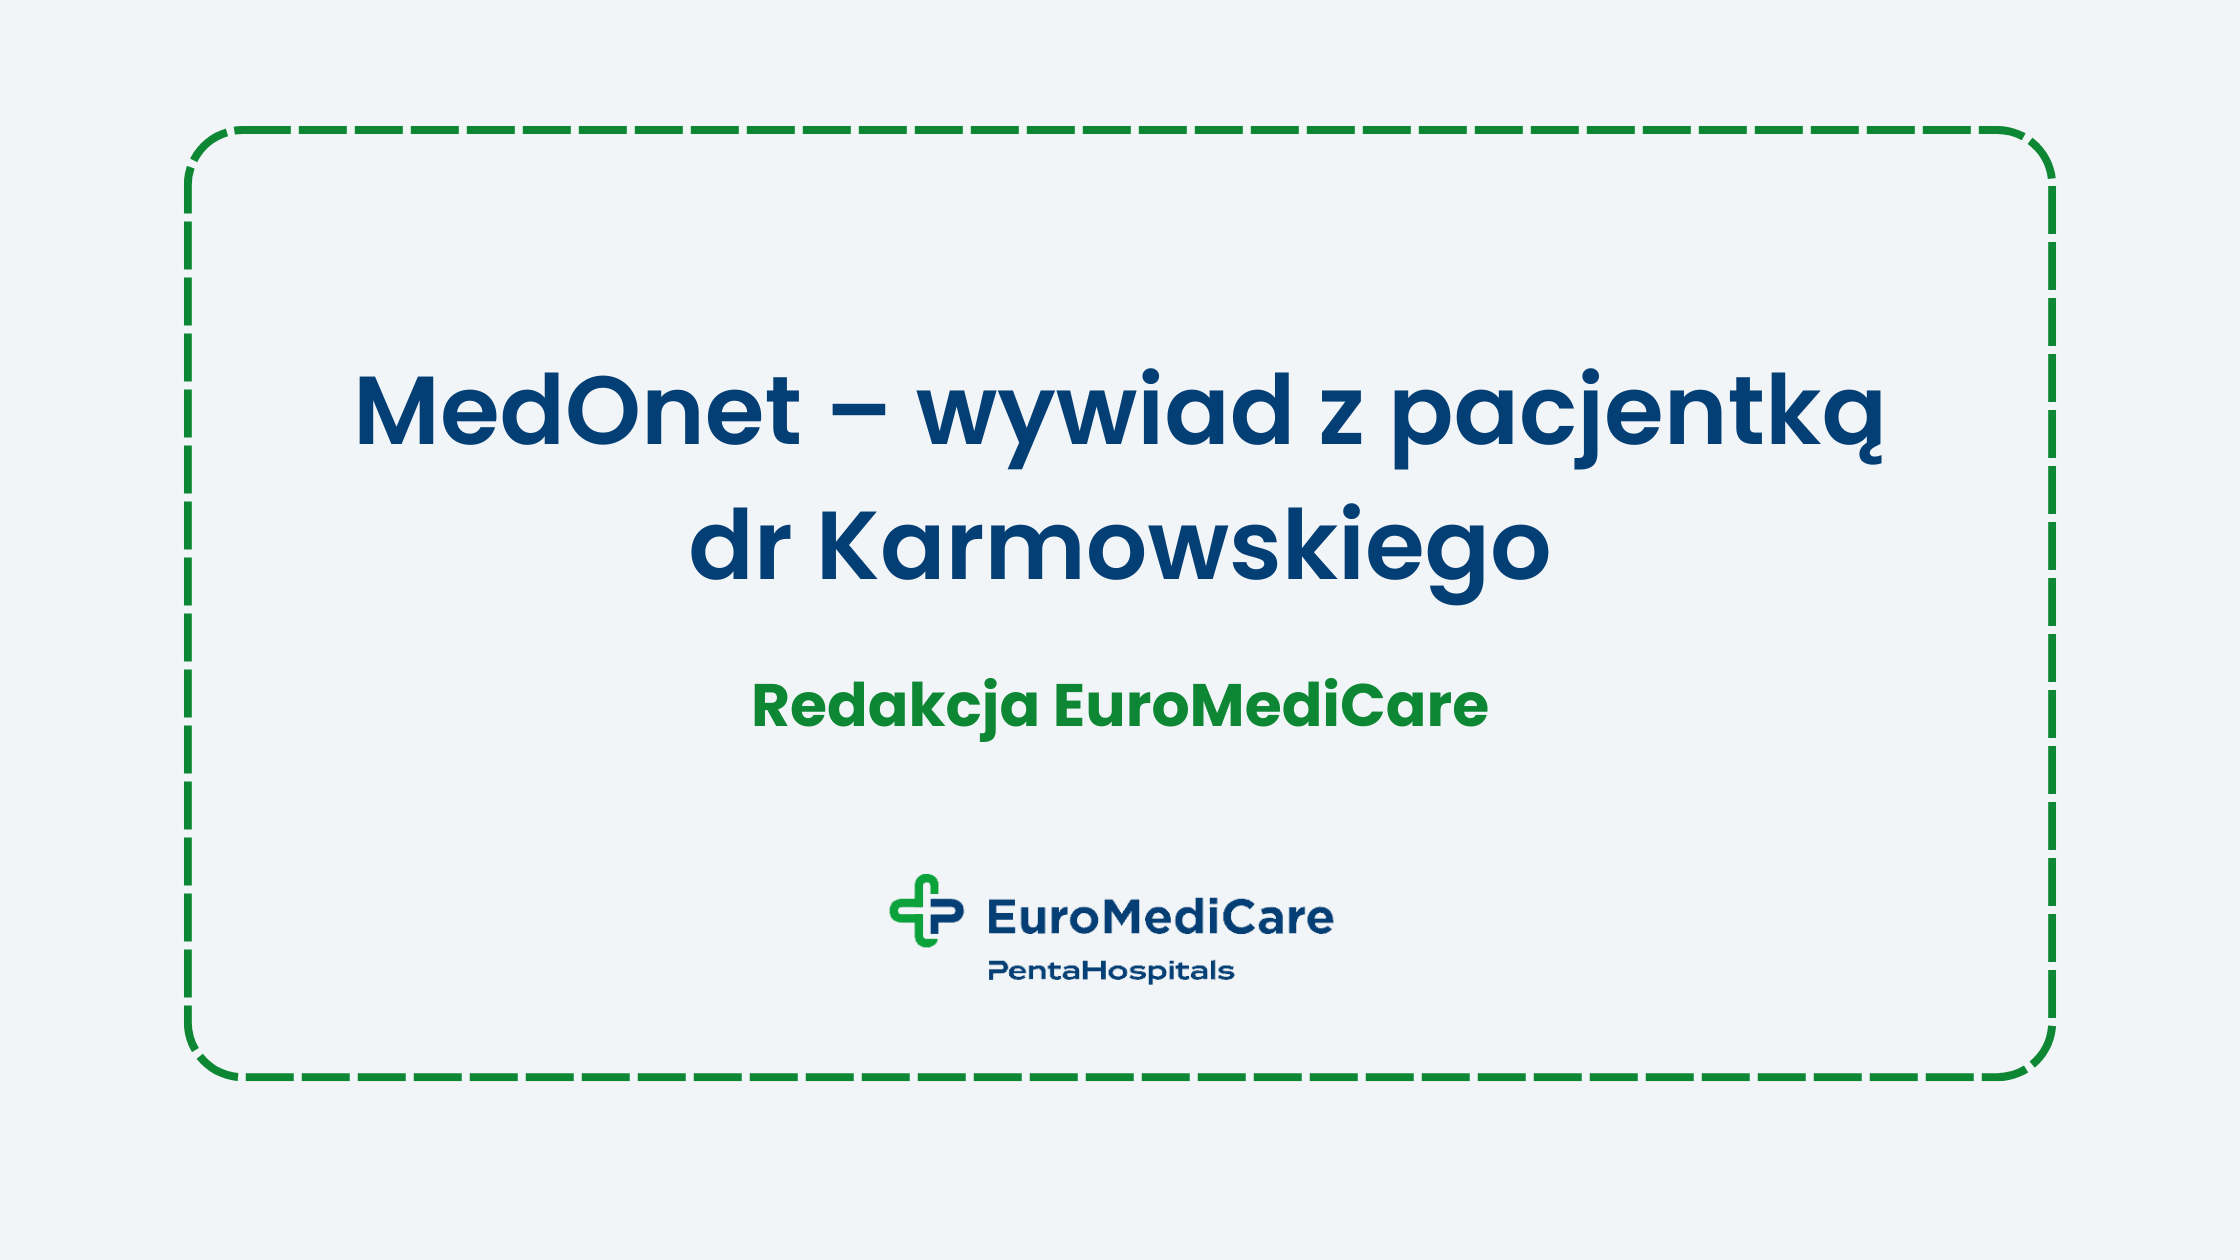 MedOnet – wywiad z pacjentką dr Karmowskiego - aktualności eudomedicare.pl